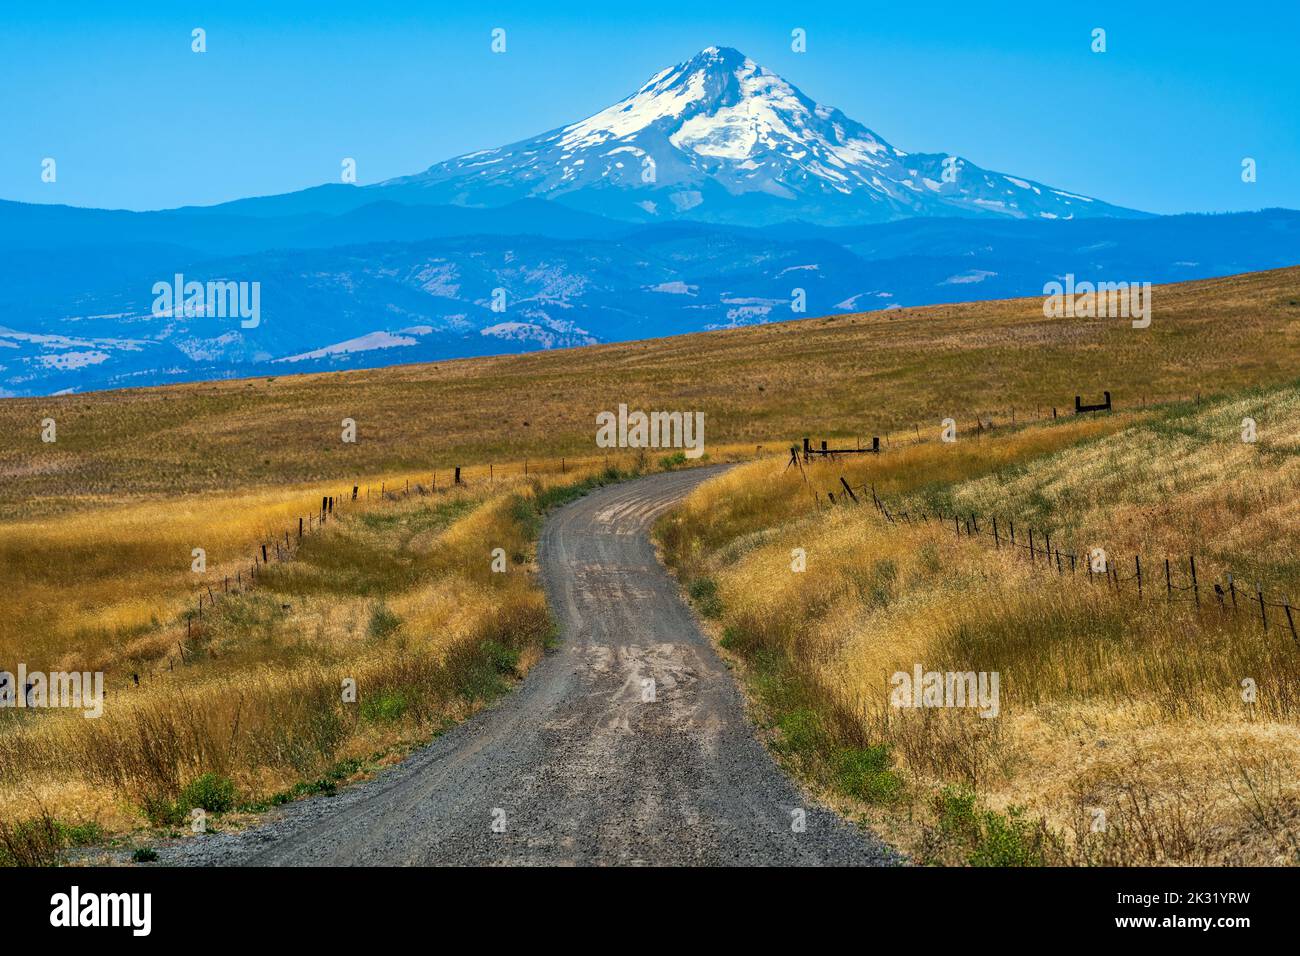 Vue panoramique sur la campagne avec Mt. Hood, The Dalles, Oregon, États-Unis Banque D'Images